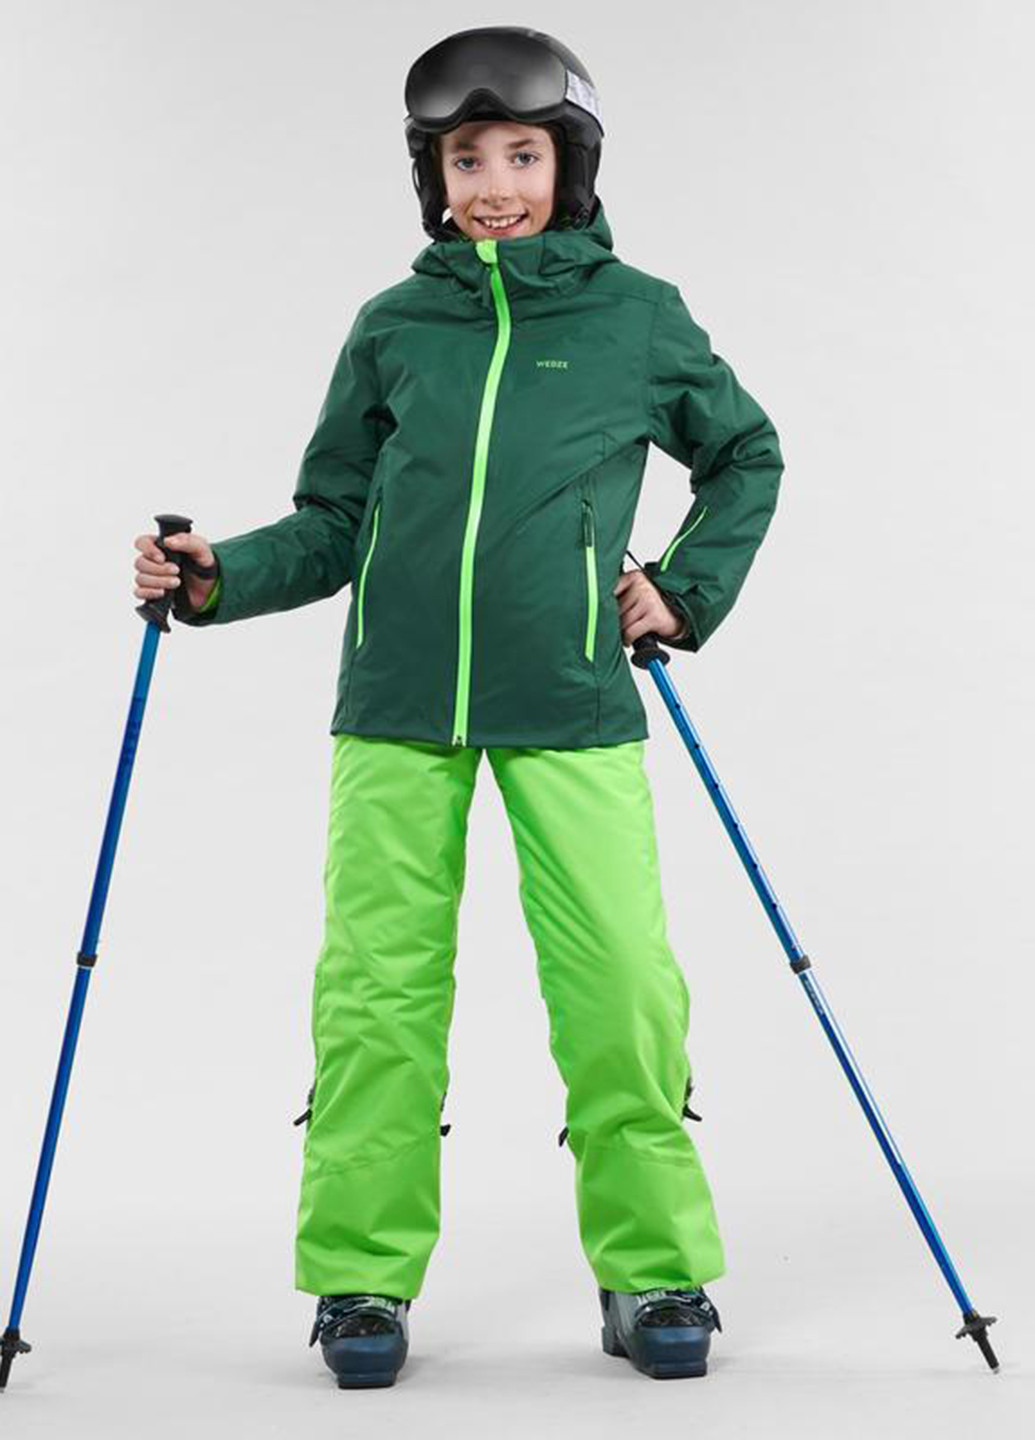 Зеленая зимняя куртка Decathlon